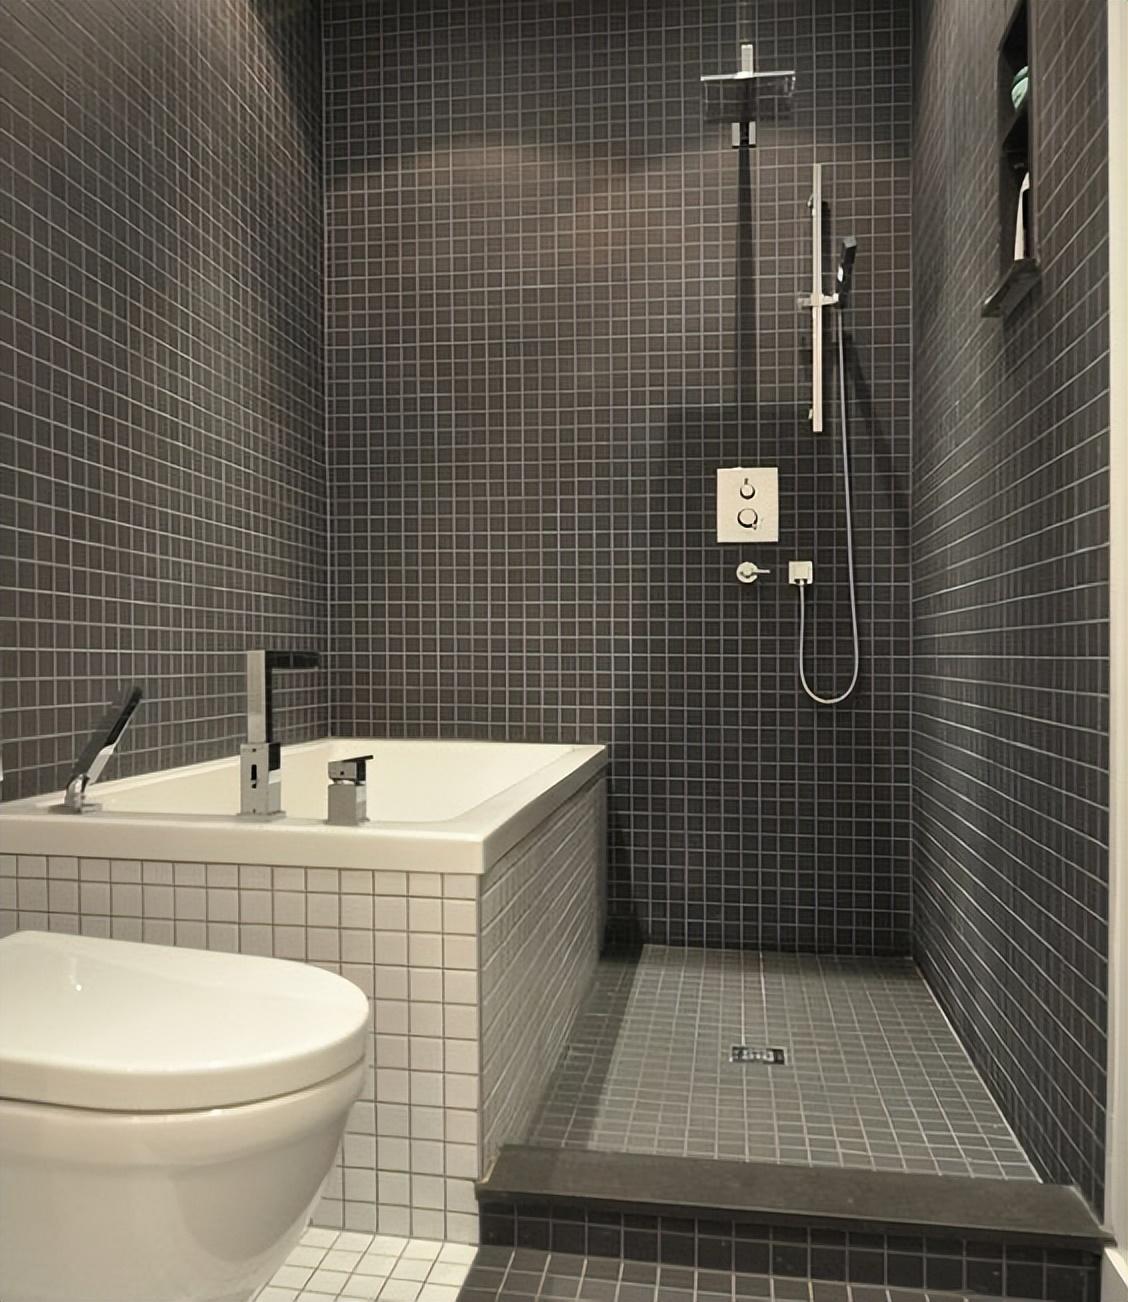 Phòng tắm quá nhỏ, làm sao để bạn có thể tách biệt khu khô và ướt? 4 thiết kế dưới đây sẽ giúp bạn - Ảnh 4.